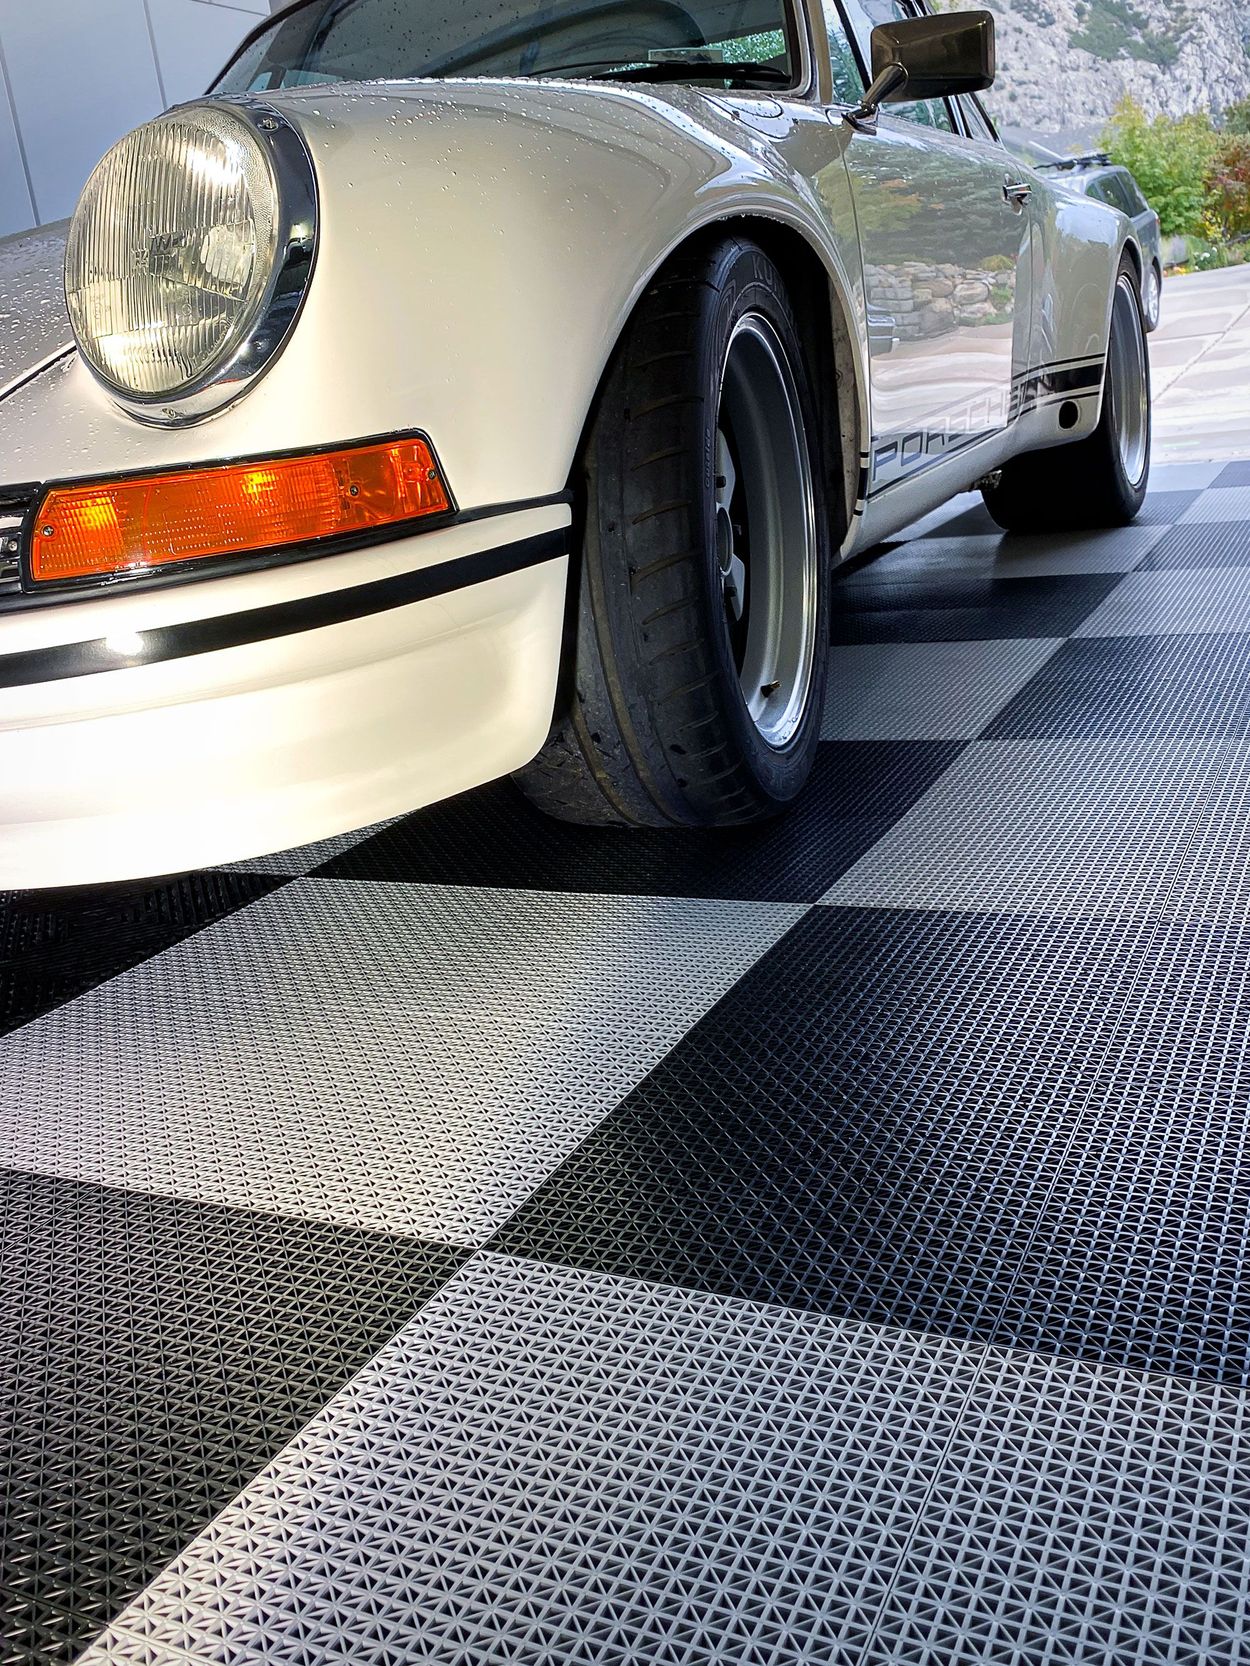 Motofloor Modular Self Draining Garage Floor Tiles Costco